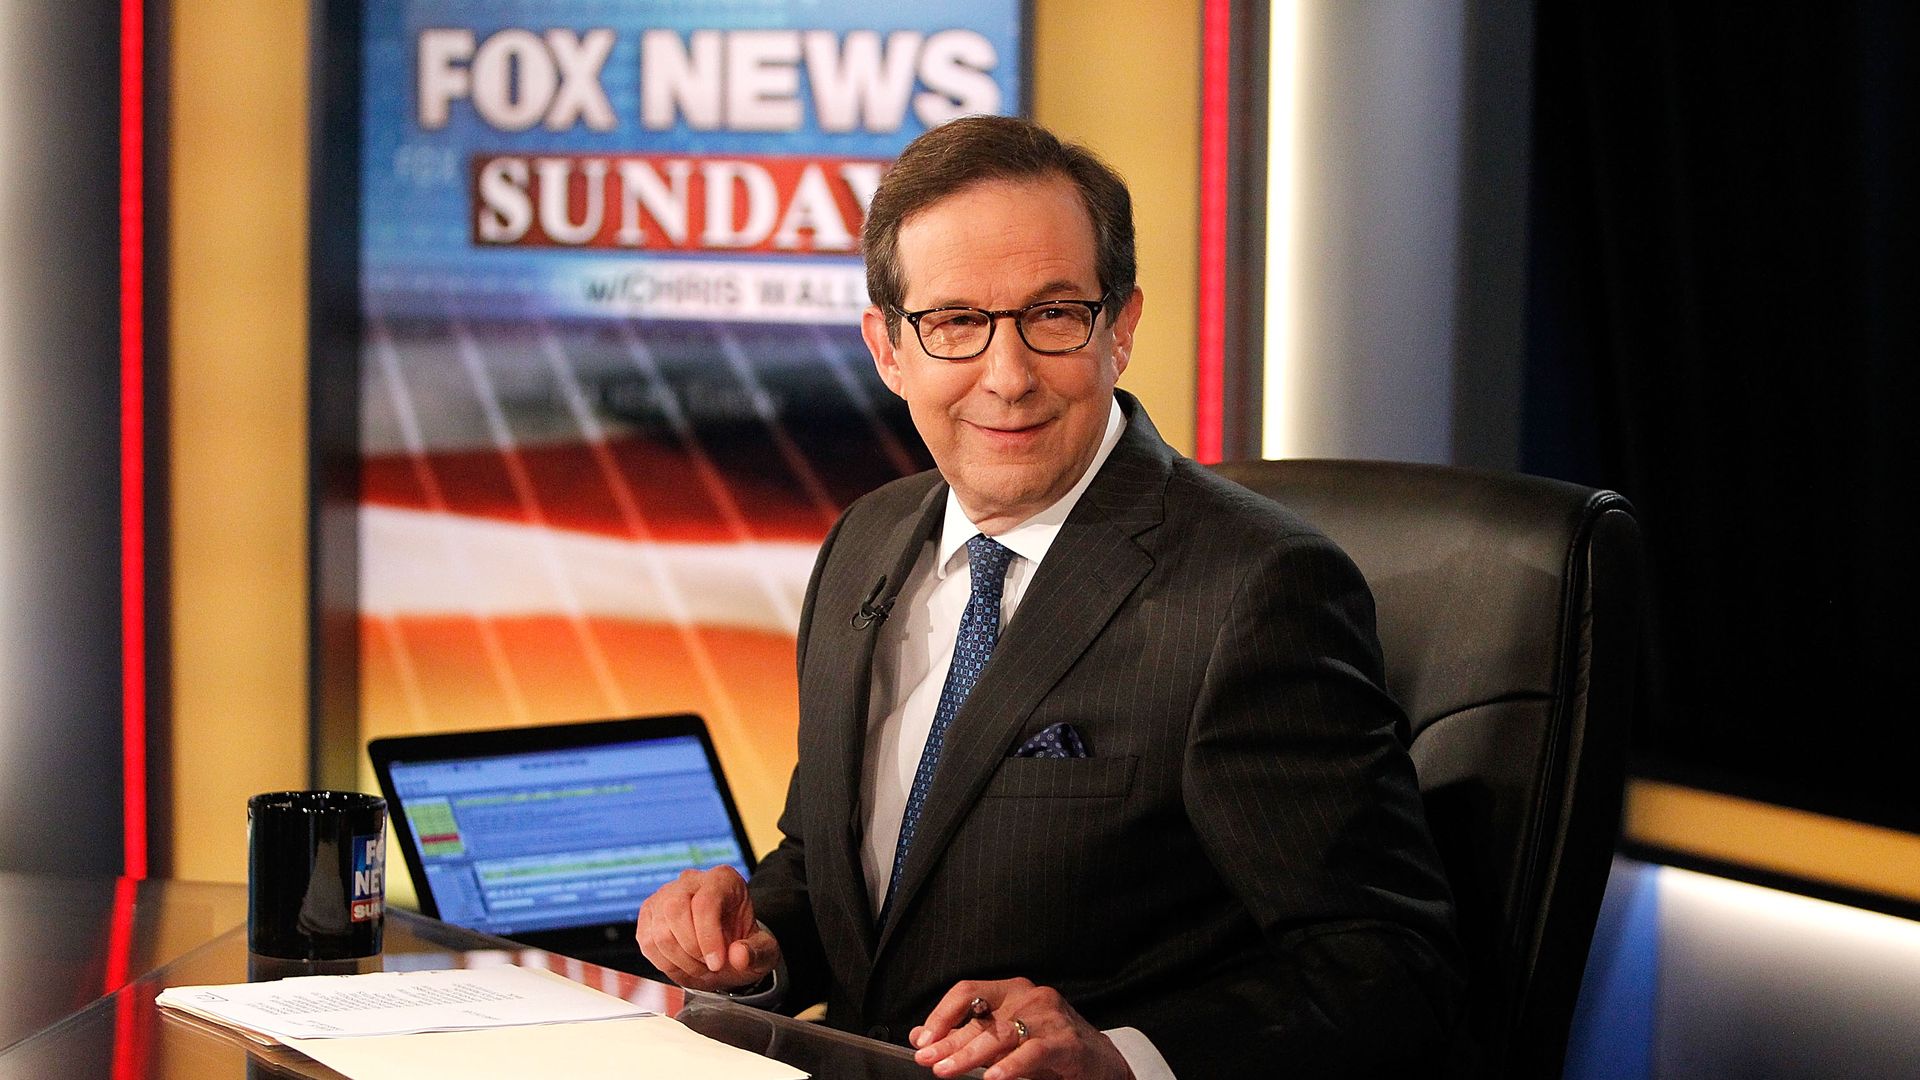 Chris Wallace, Fox News host.